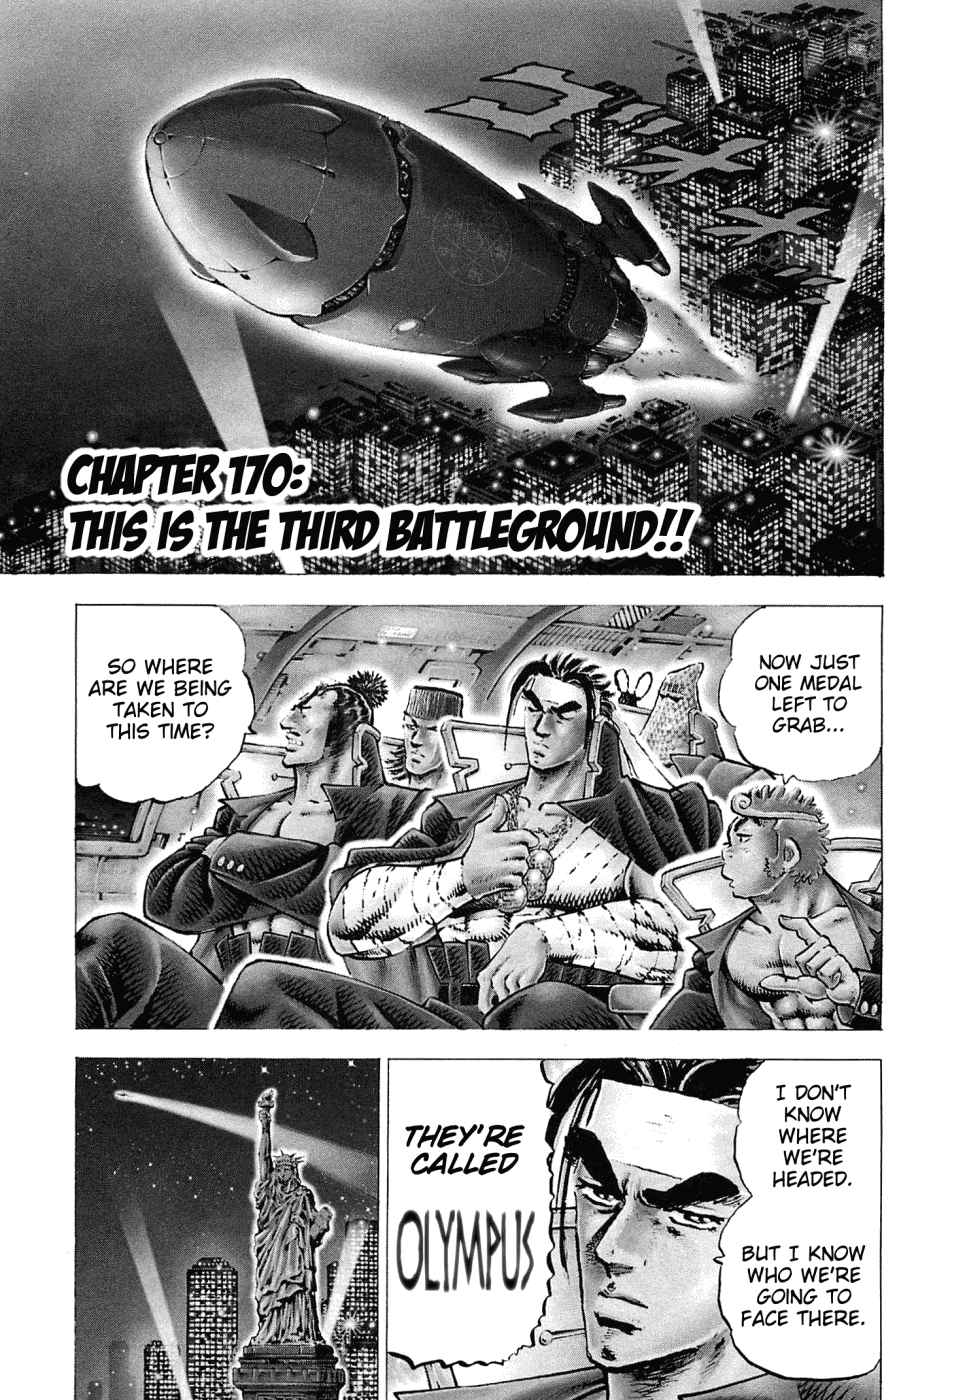 Akatsuki!! Otokojuku Seinen yo, Taishi wo Idake Vol. 22 Ch. 170 This is the Third Battleground!!